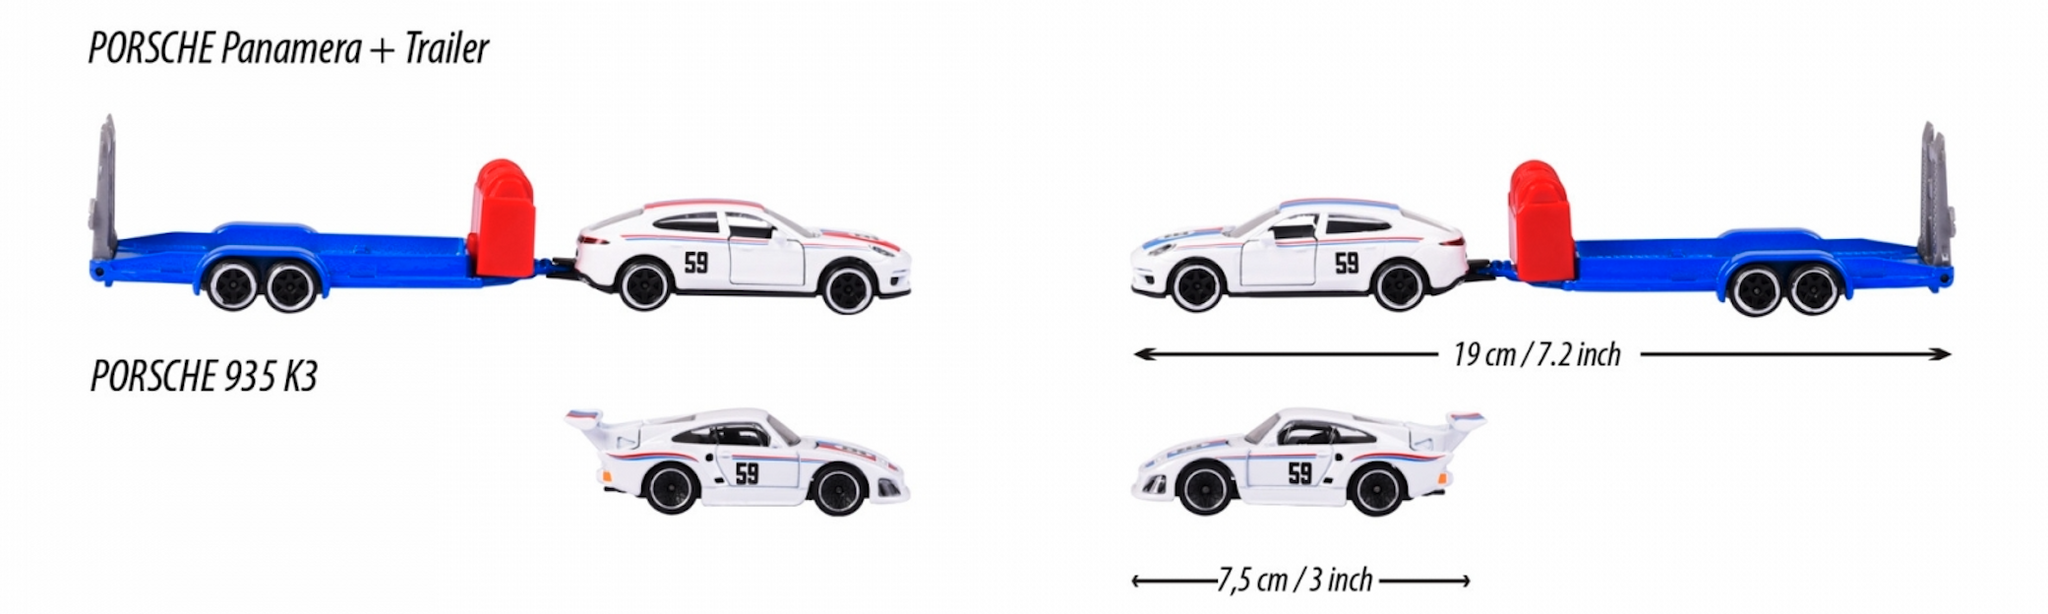 NEW! Skala 1/64 fr Majorette - Porsche Race Trailer, Panamera + 935K3